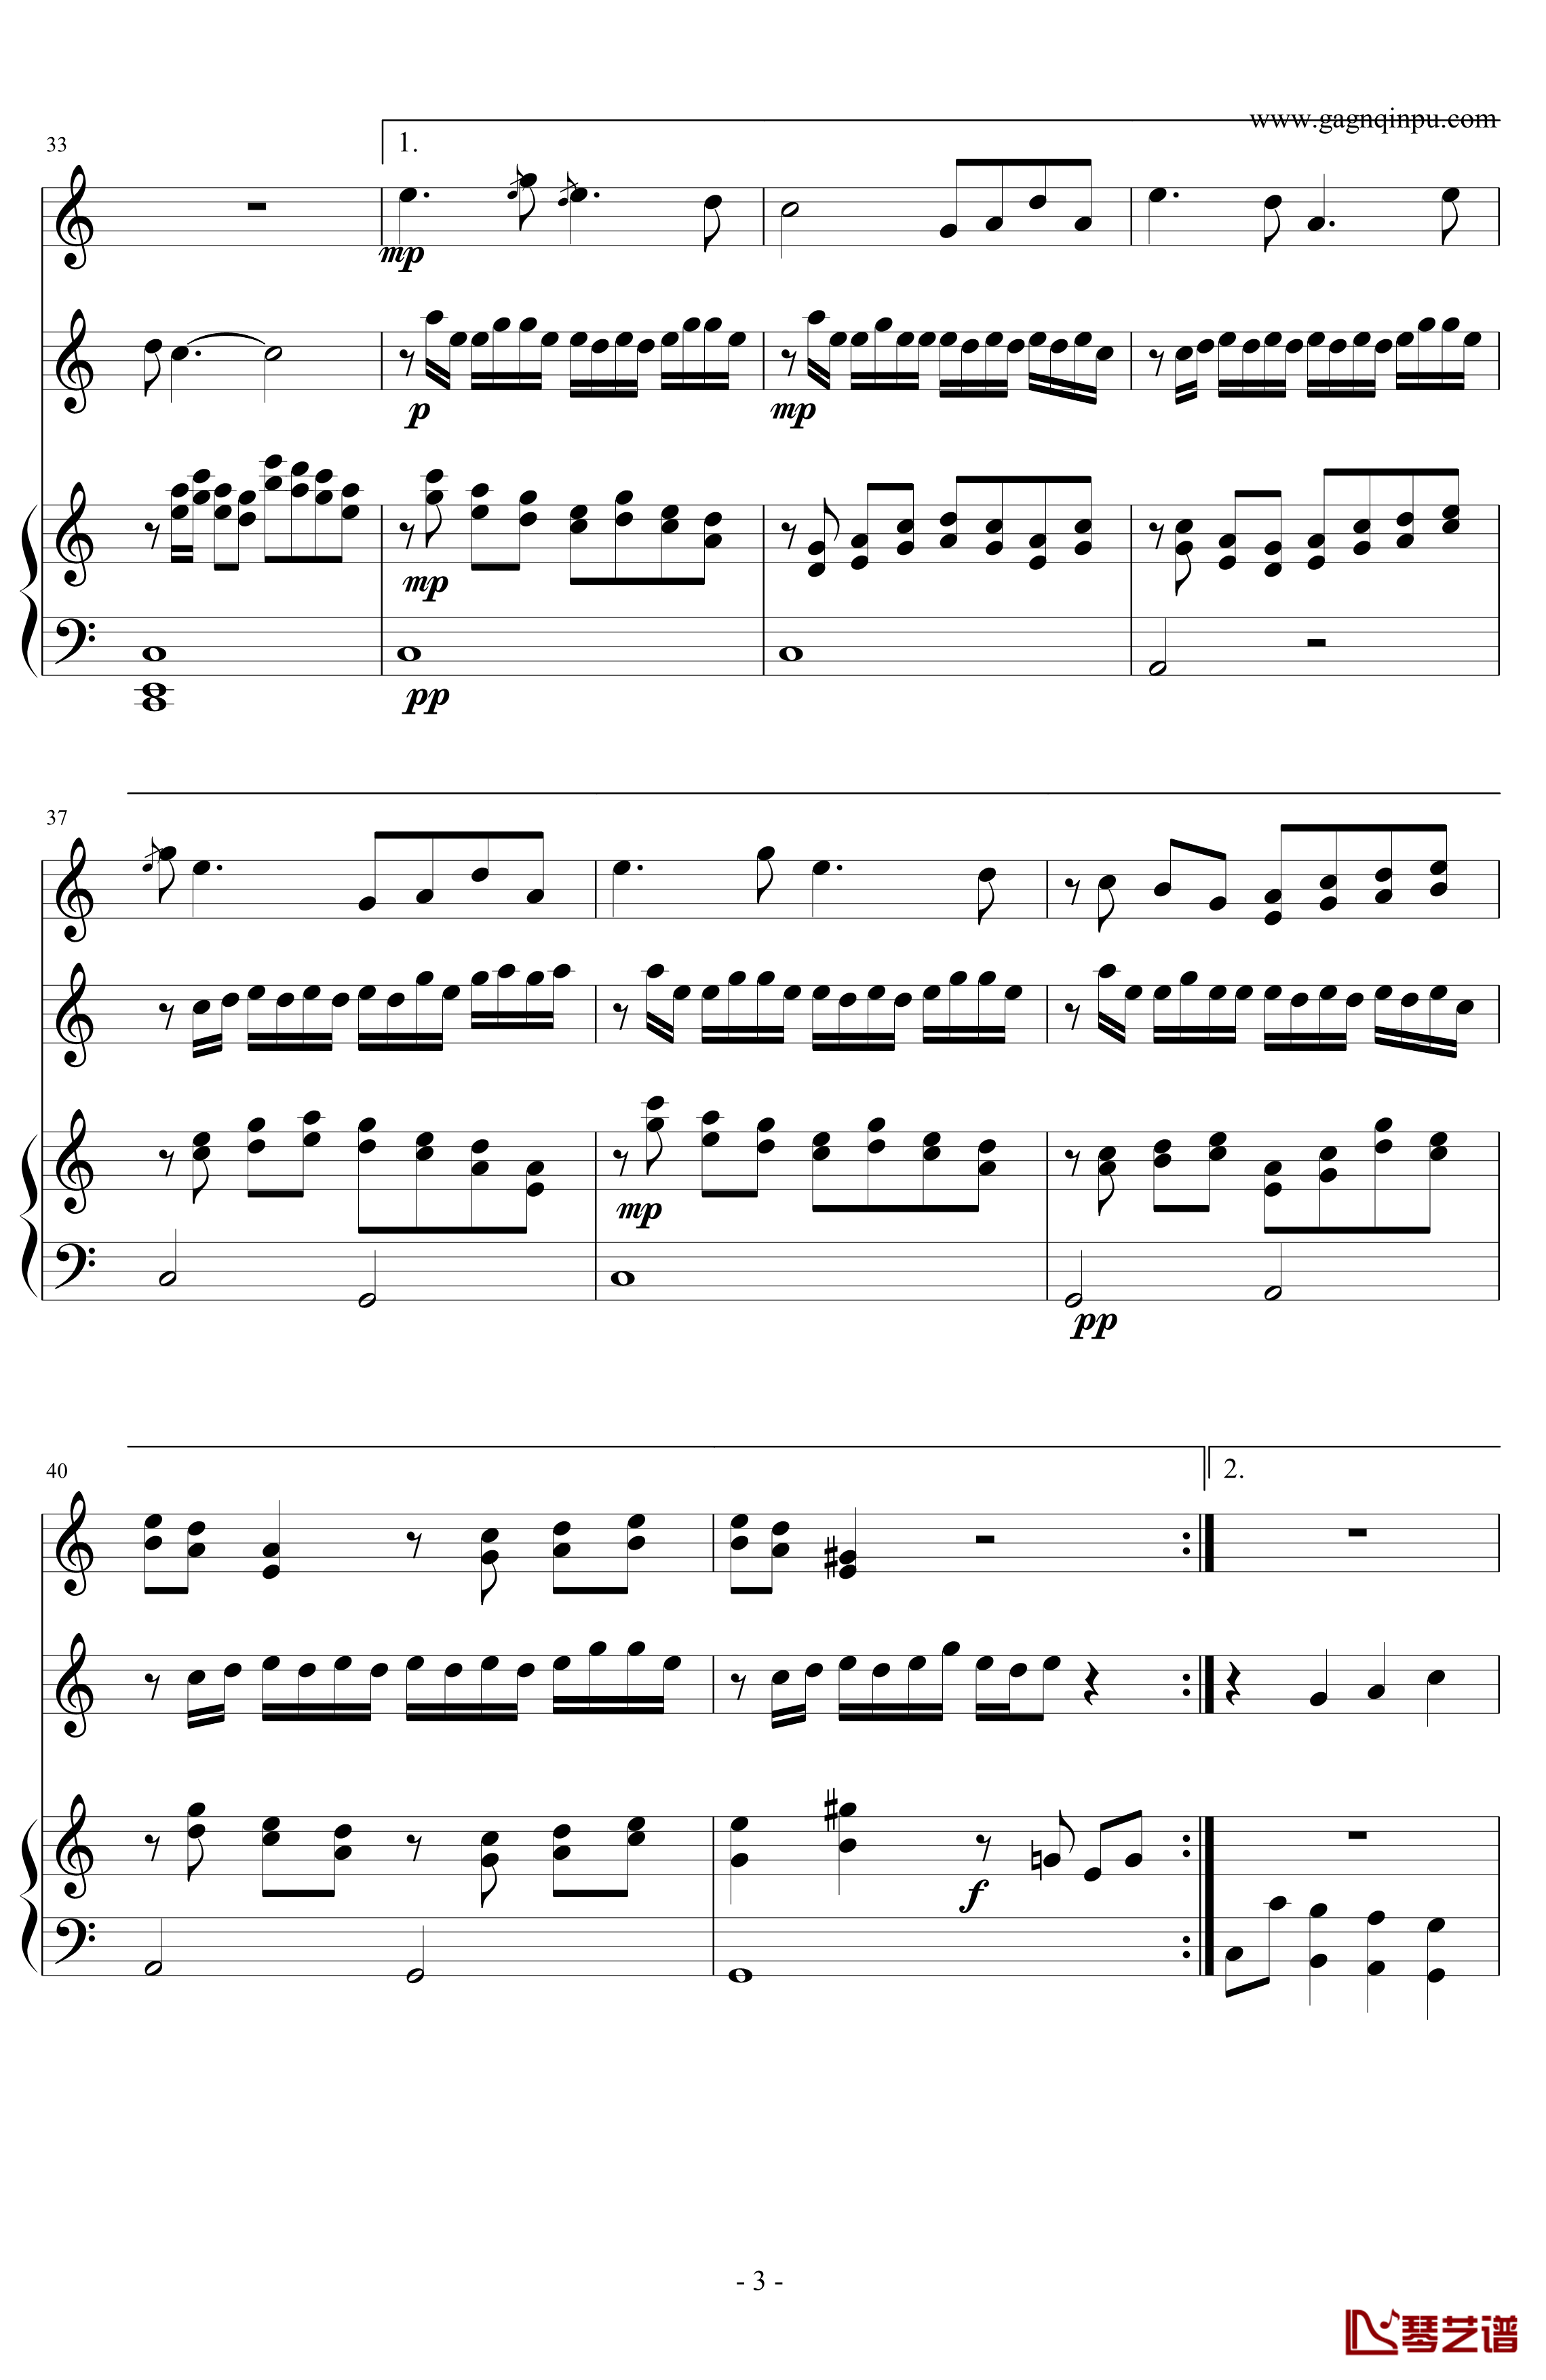 兰亭序钢琴谱-2011春晚-最后两行钢琴伴奏弹唱最完美版-周杰伦3